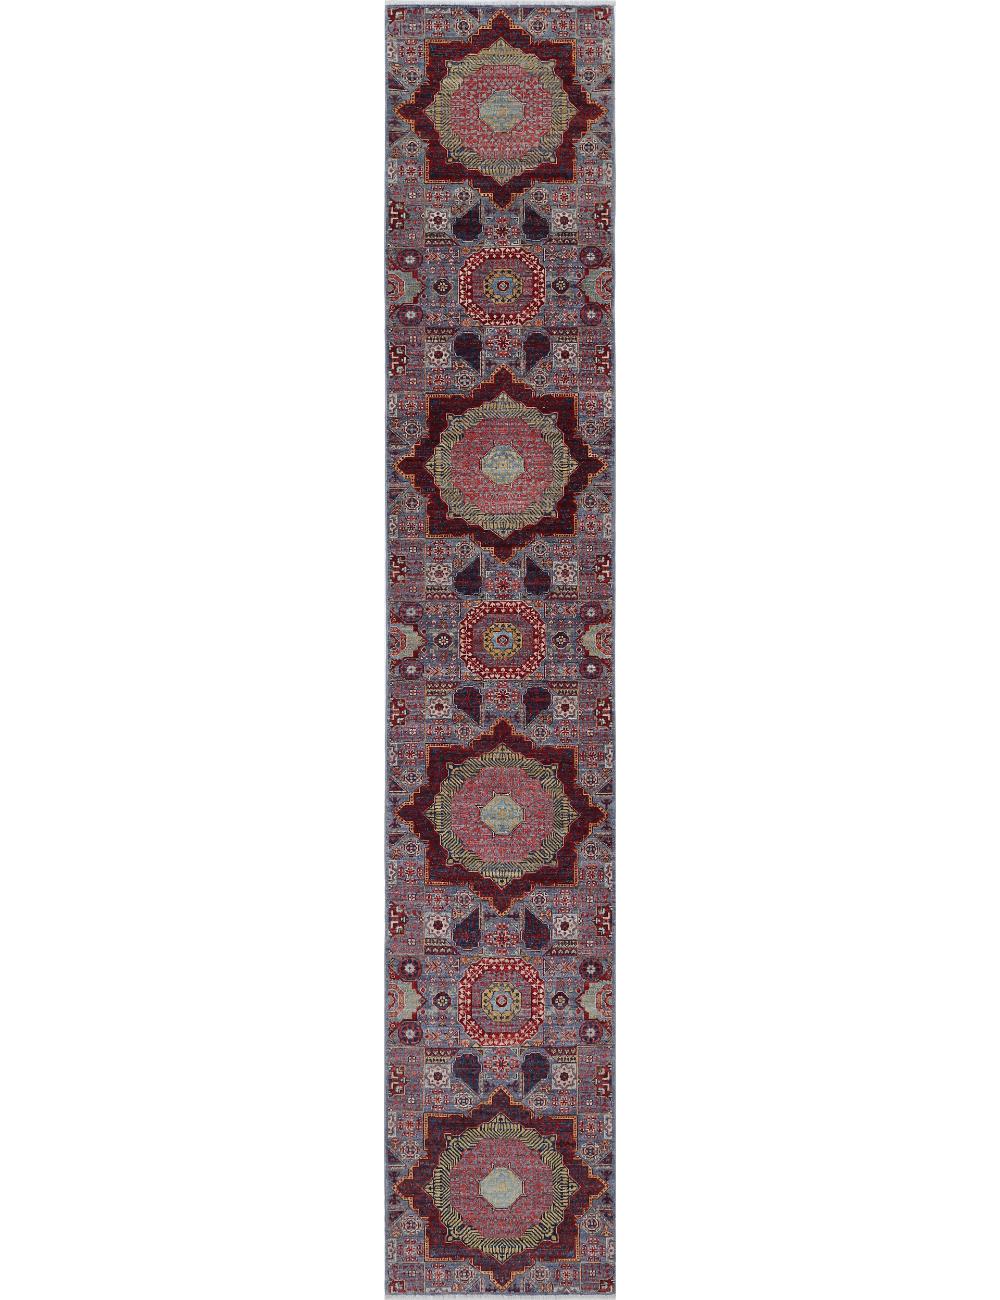 Hand Knotted Mamluk Wool Rug - 2'7'' x 14'10'' Arteverk Arteverk Rugs